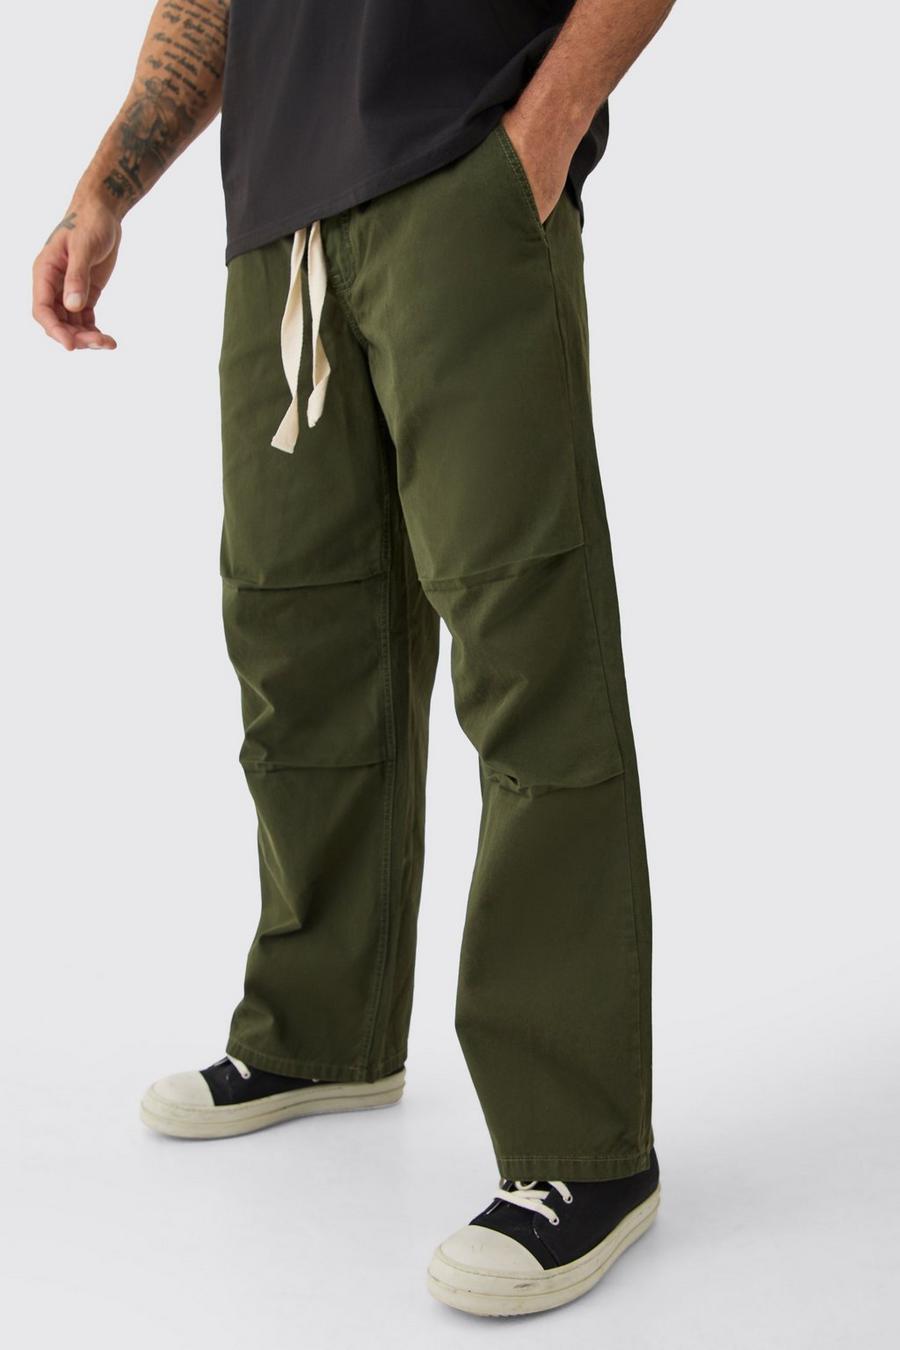 Lockere Hose mit elastischem Bund und Kontrast-Kordelzug, Khaki